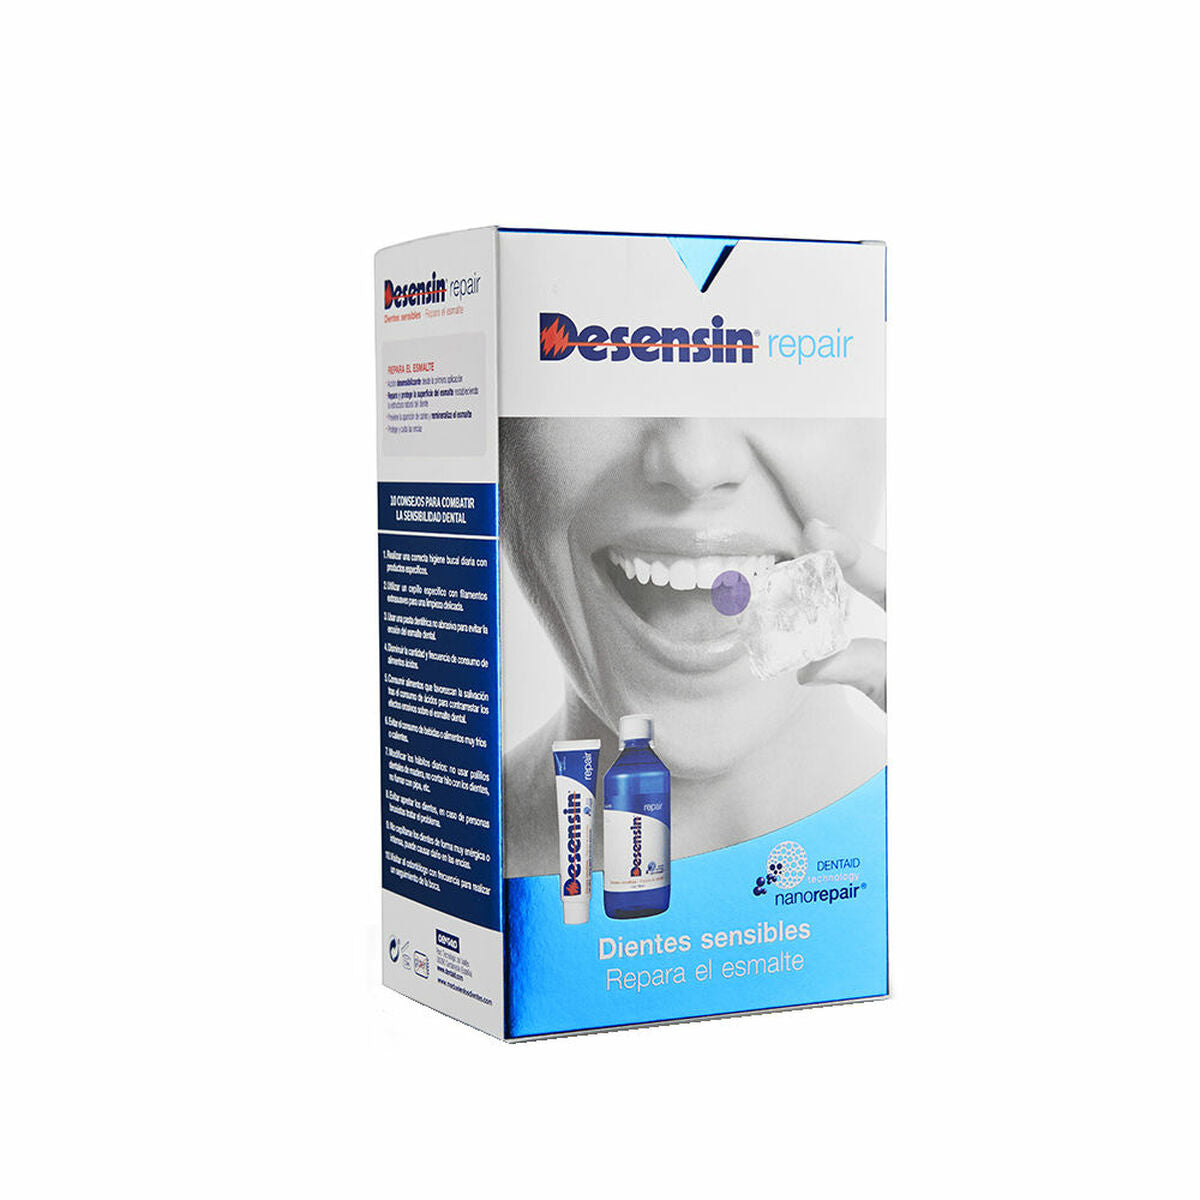 Suuhygienia asetettu desensiini -korjausherkät hampaat (2 kappaletta)